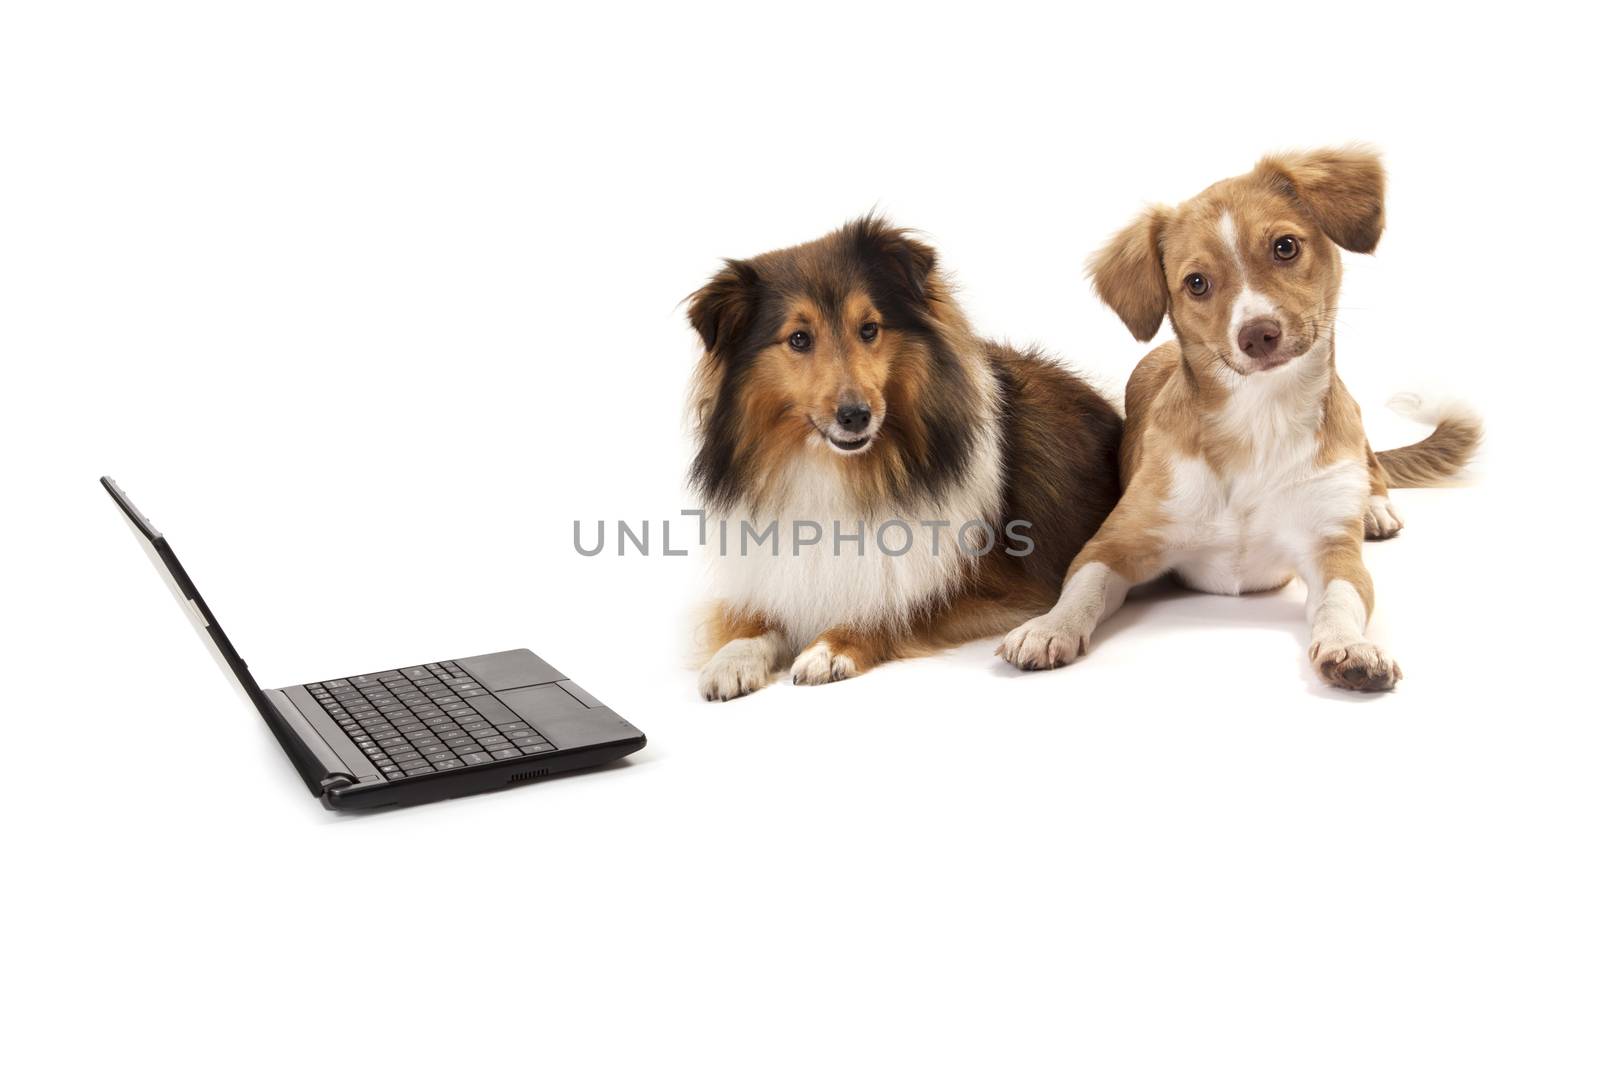 Shetland sheepdog and mixed breed dog sitting near laptop over white background